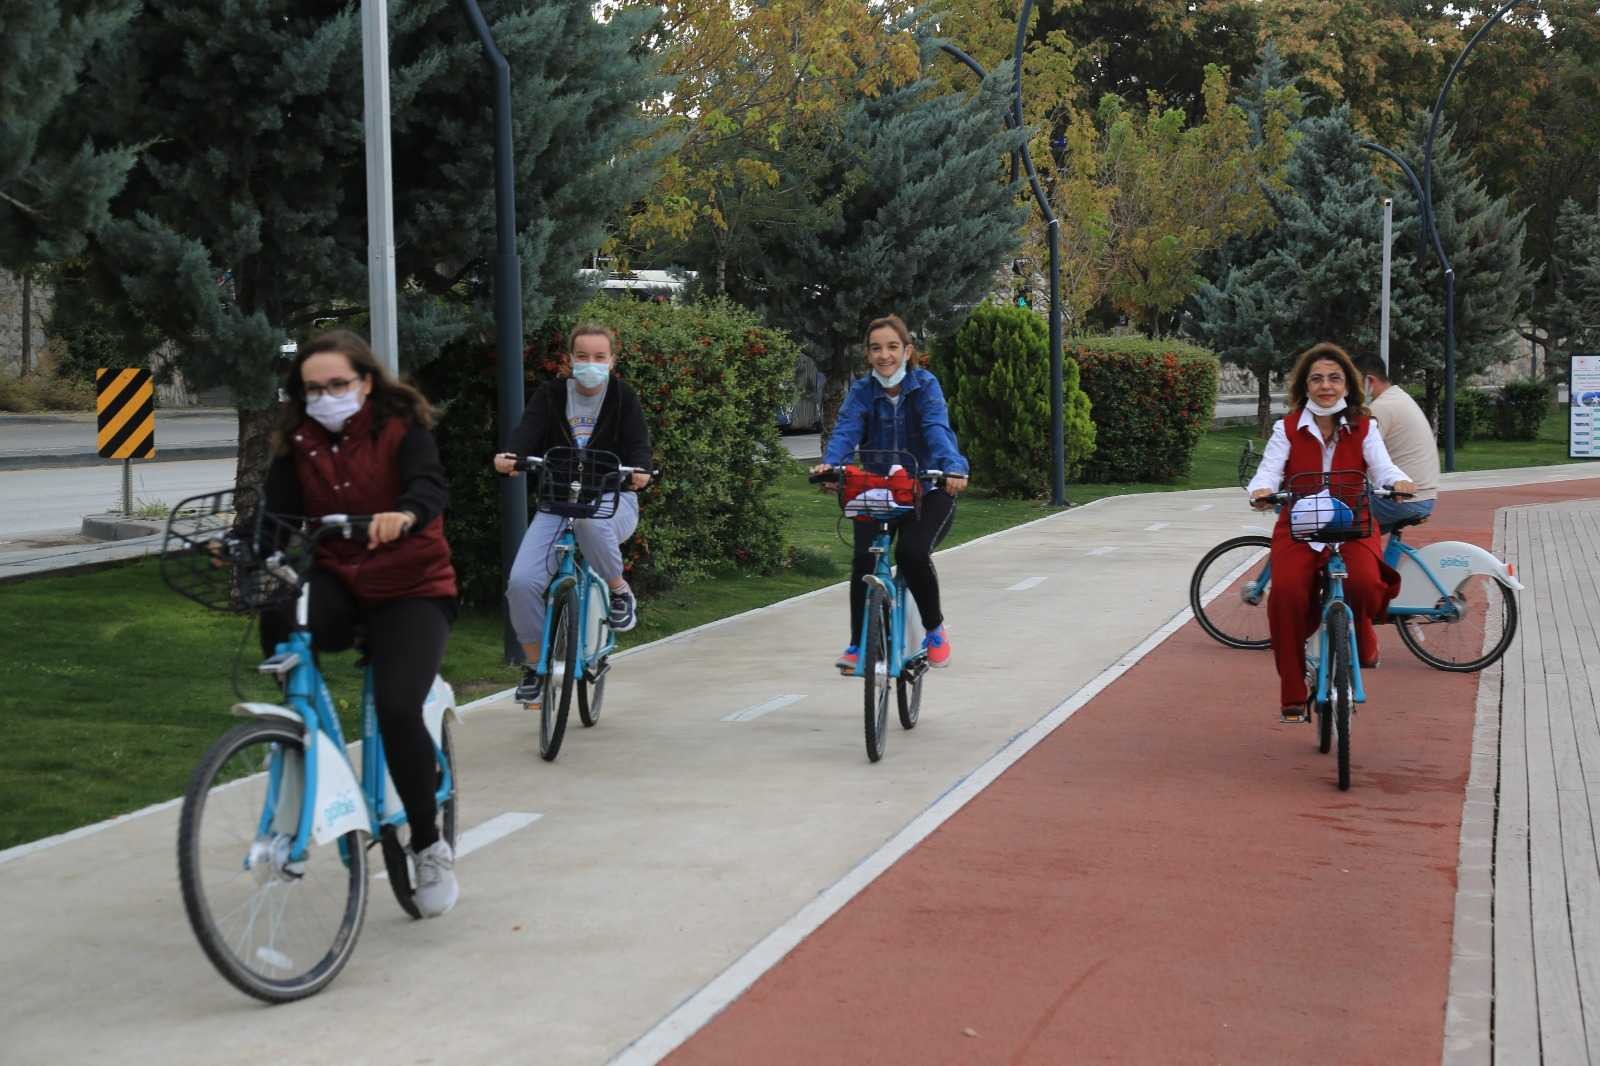 Başkentliler Avrupa Hareketlilik Haftası’nda bisiklet turu yaptı #ankara